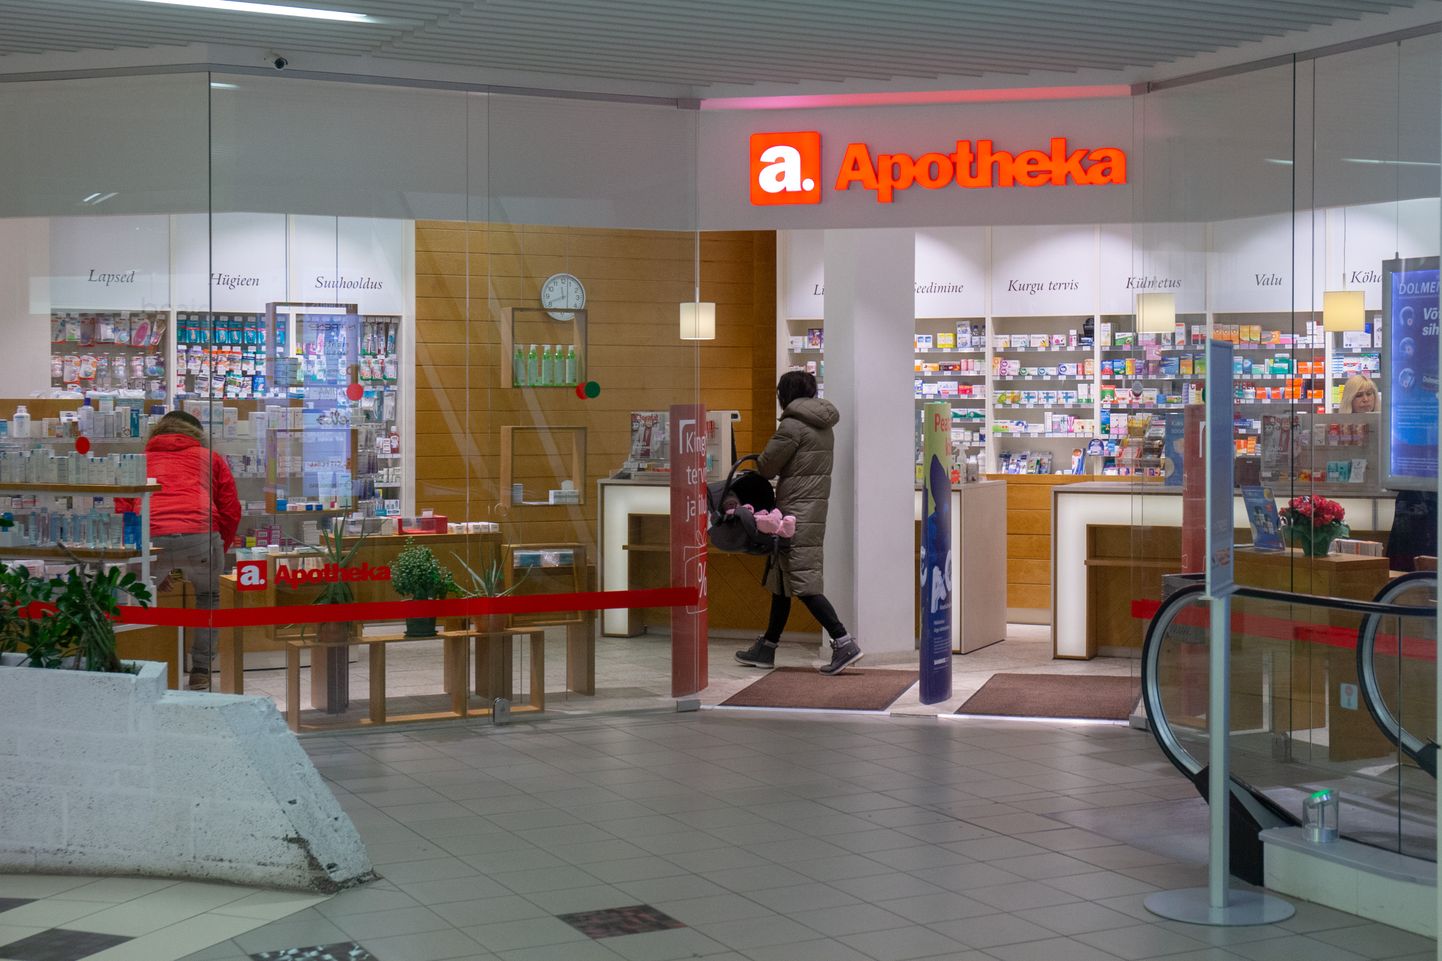 Из попавших в руки киберпреступников данных о покупках клиентов Apotheka информация об безрецептурных лекарствах составляет менее одного процента.